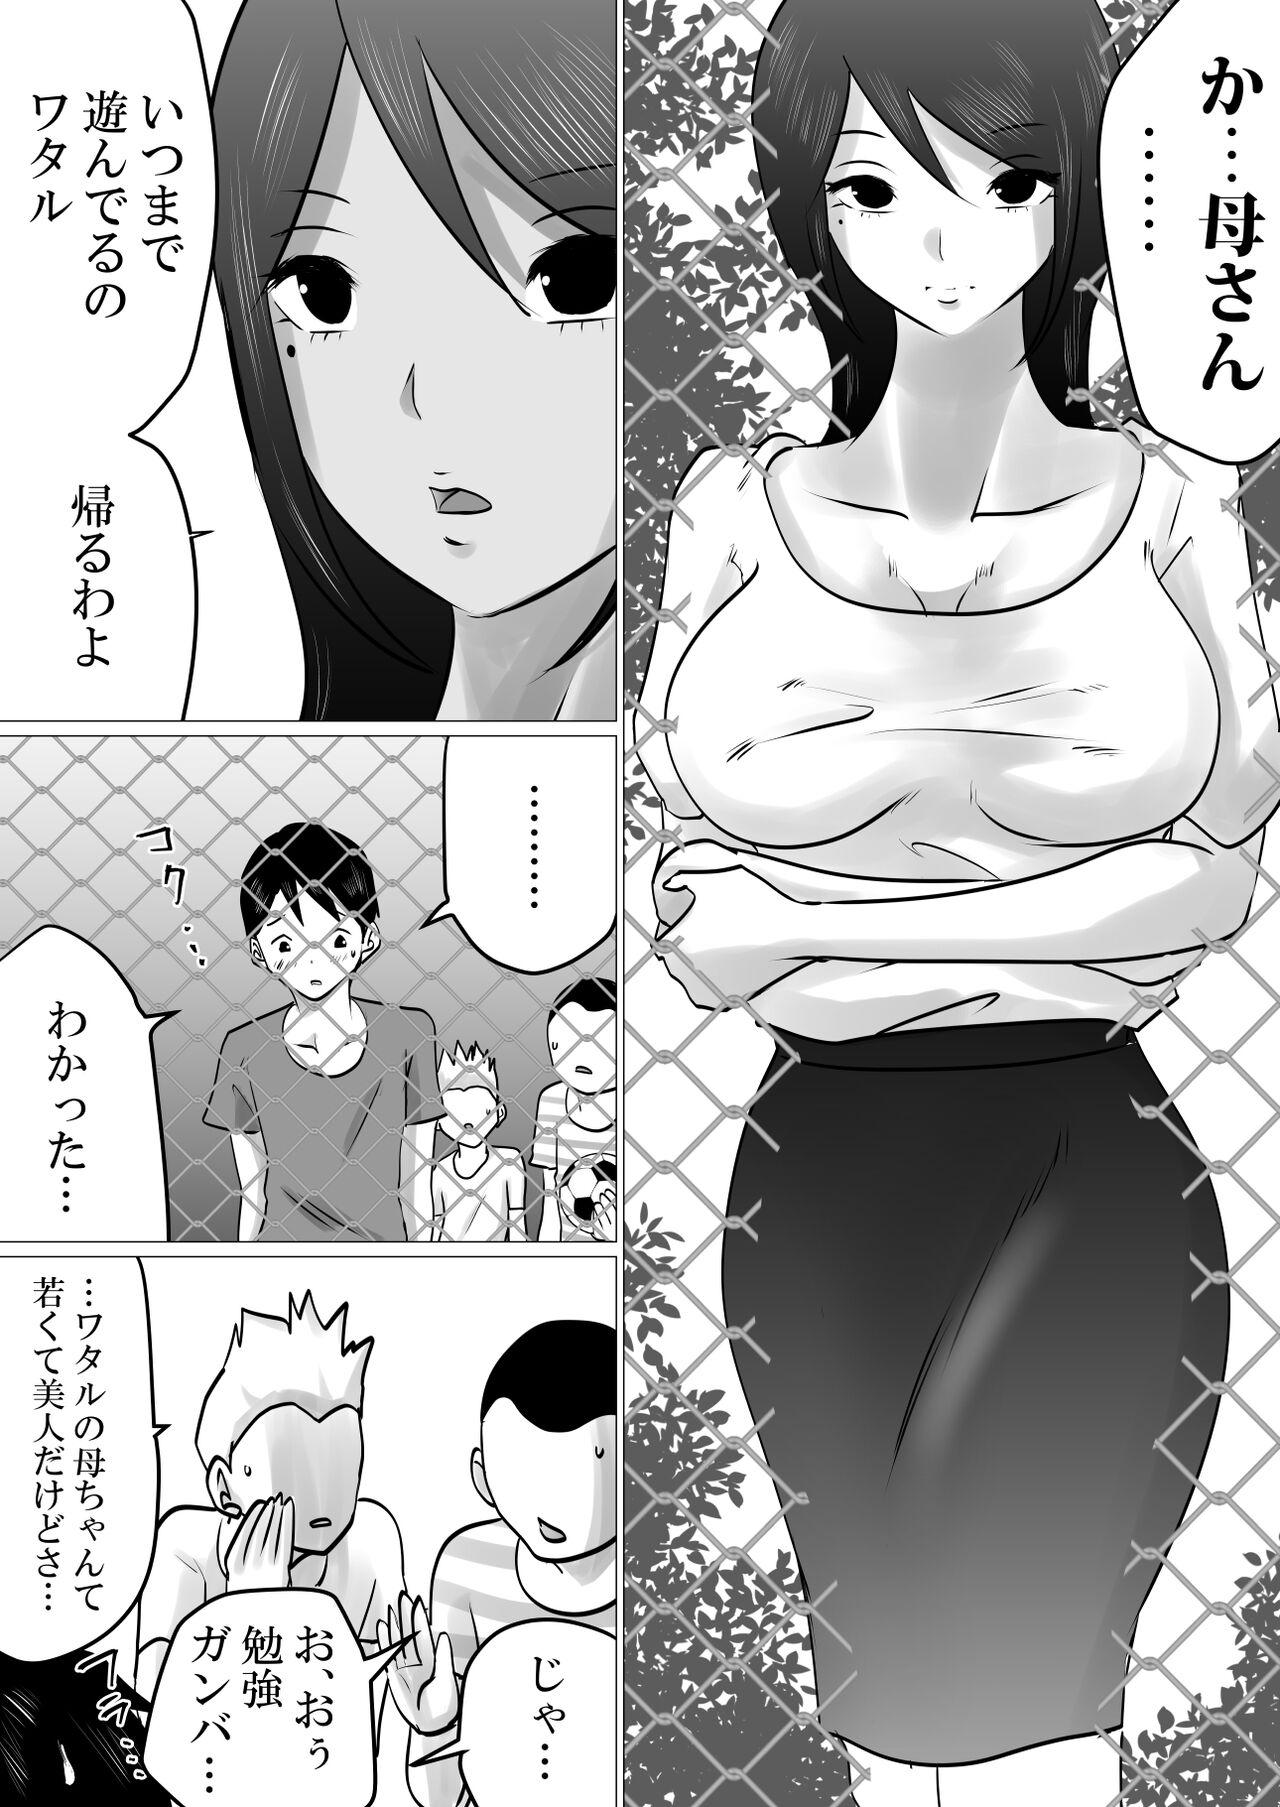 Gapes Gaping Asshole Bokushika Shiranai, Cool na Haha no Ura no Kao. - Original Police - Page 3